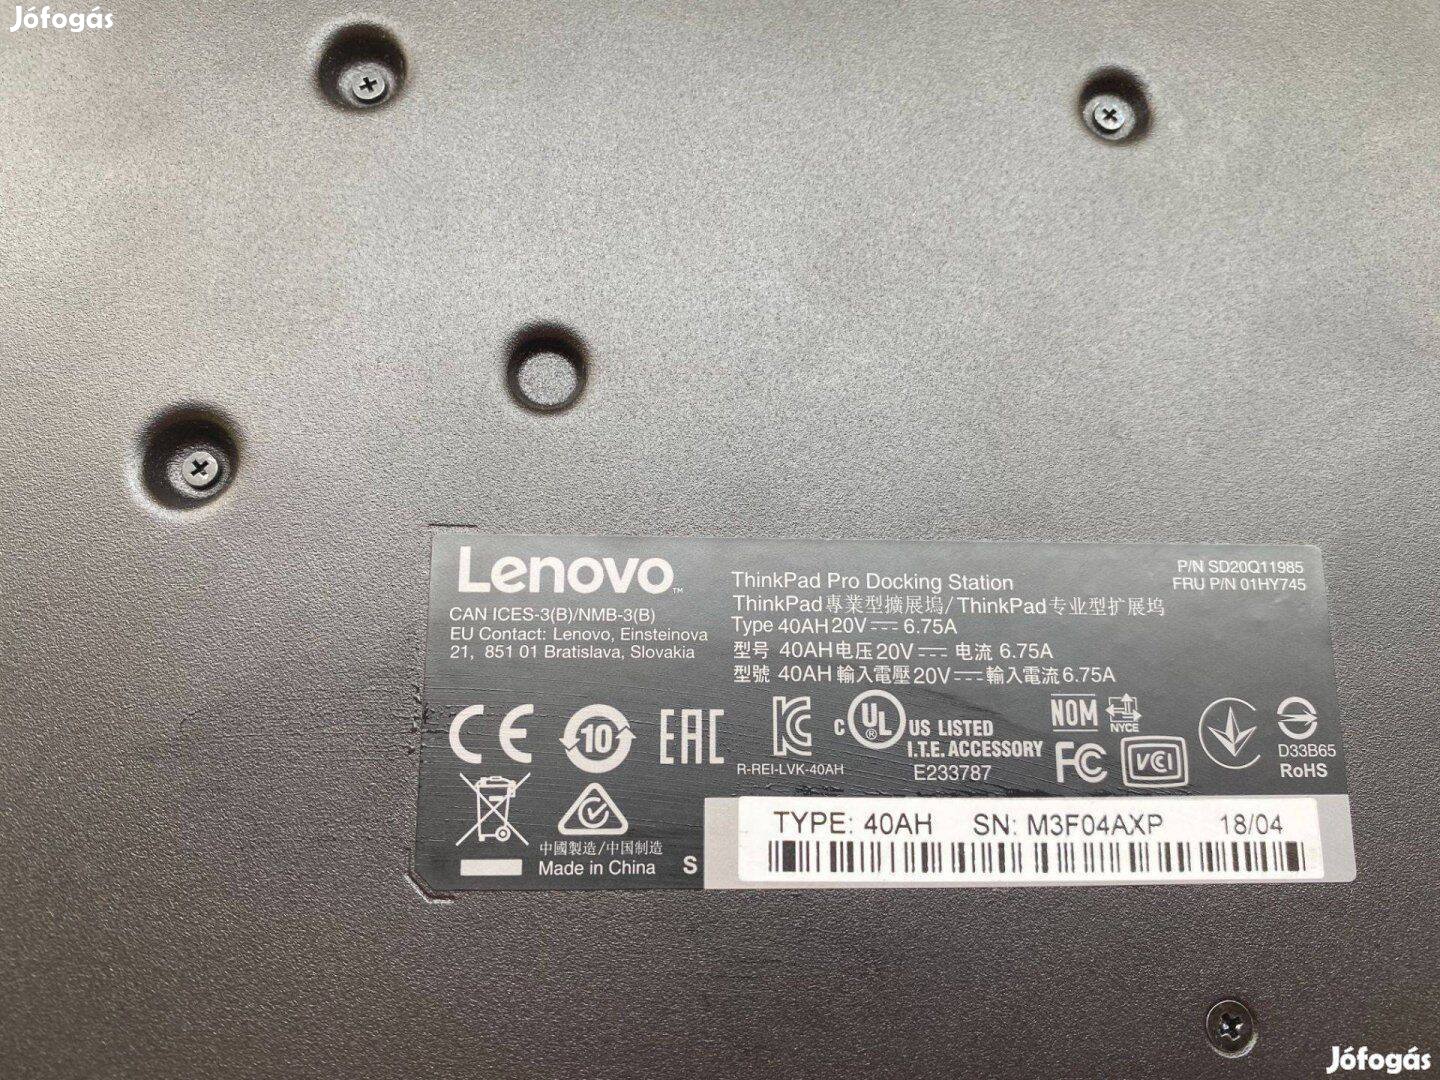 Lenovo Pro dokkoló 40AH20V dokkoló 40AH Thinkpad Pro dokkoló 01HY745